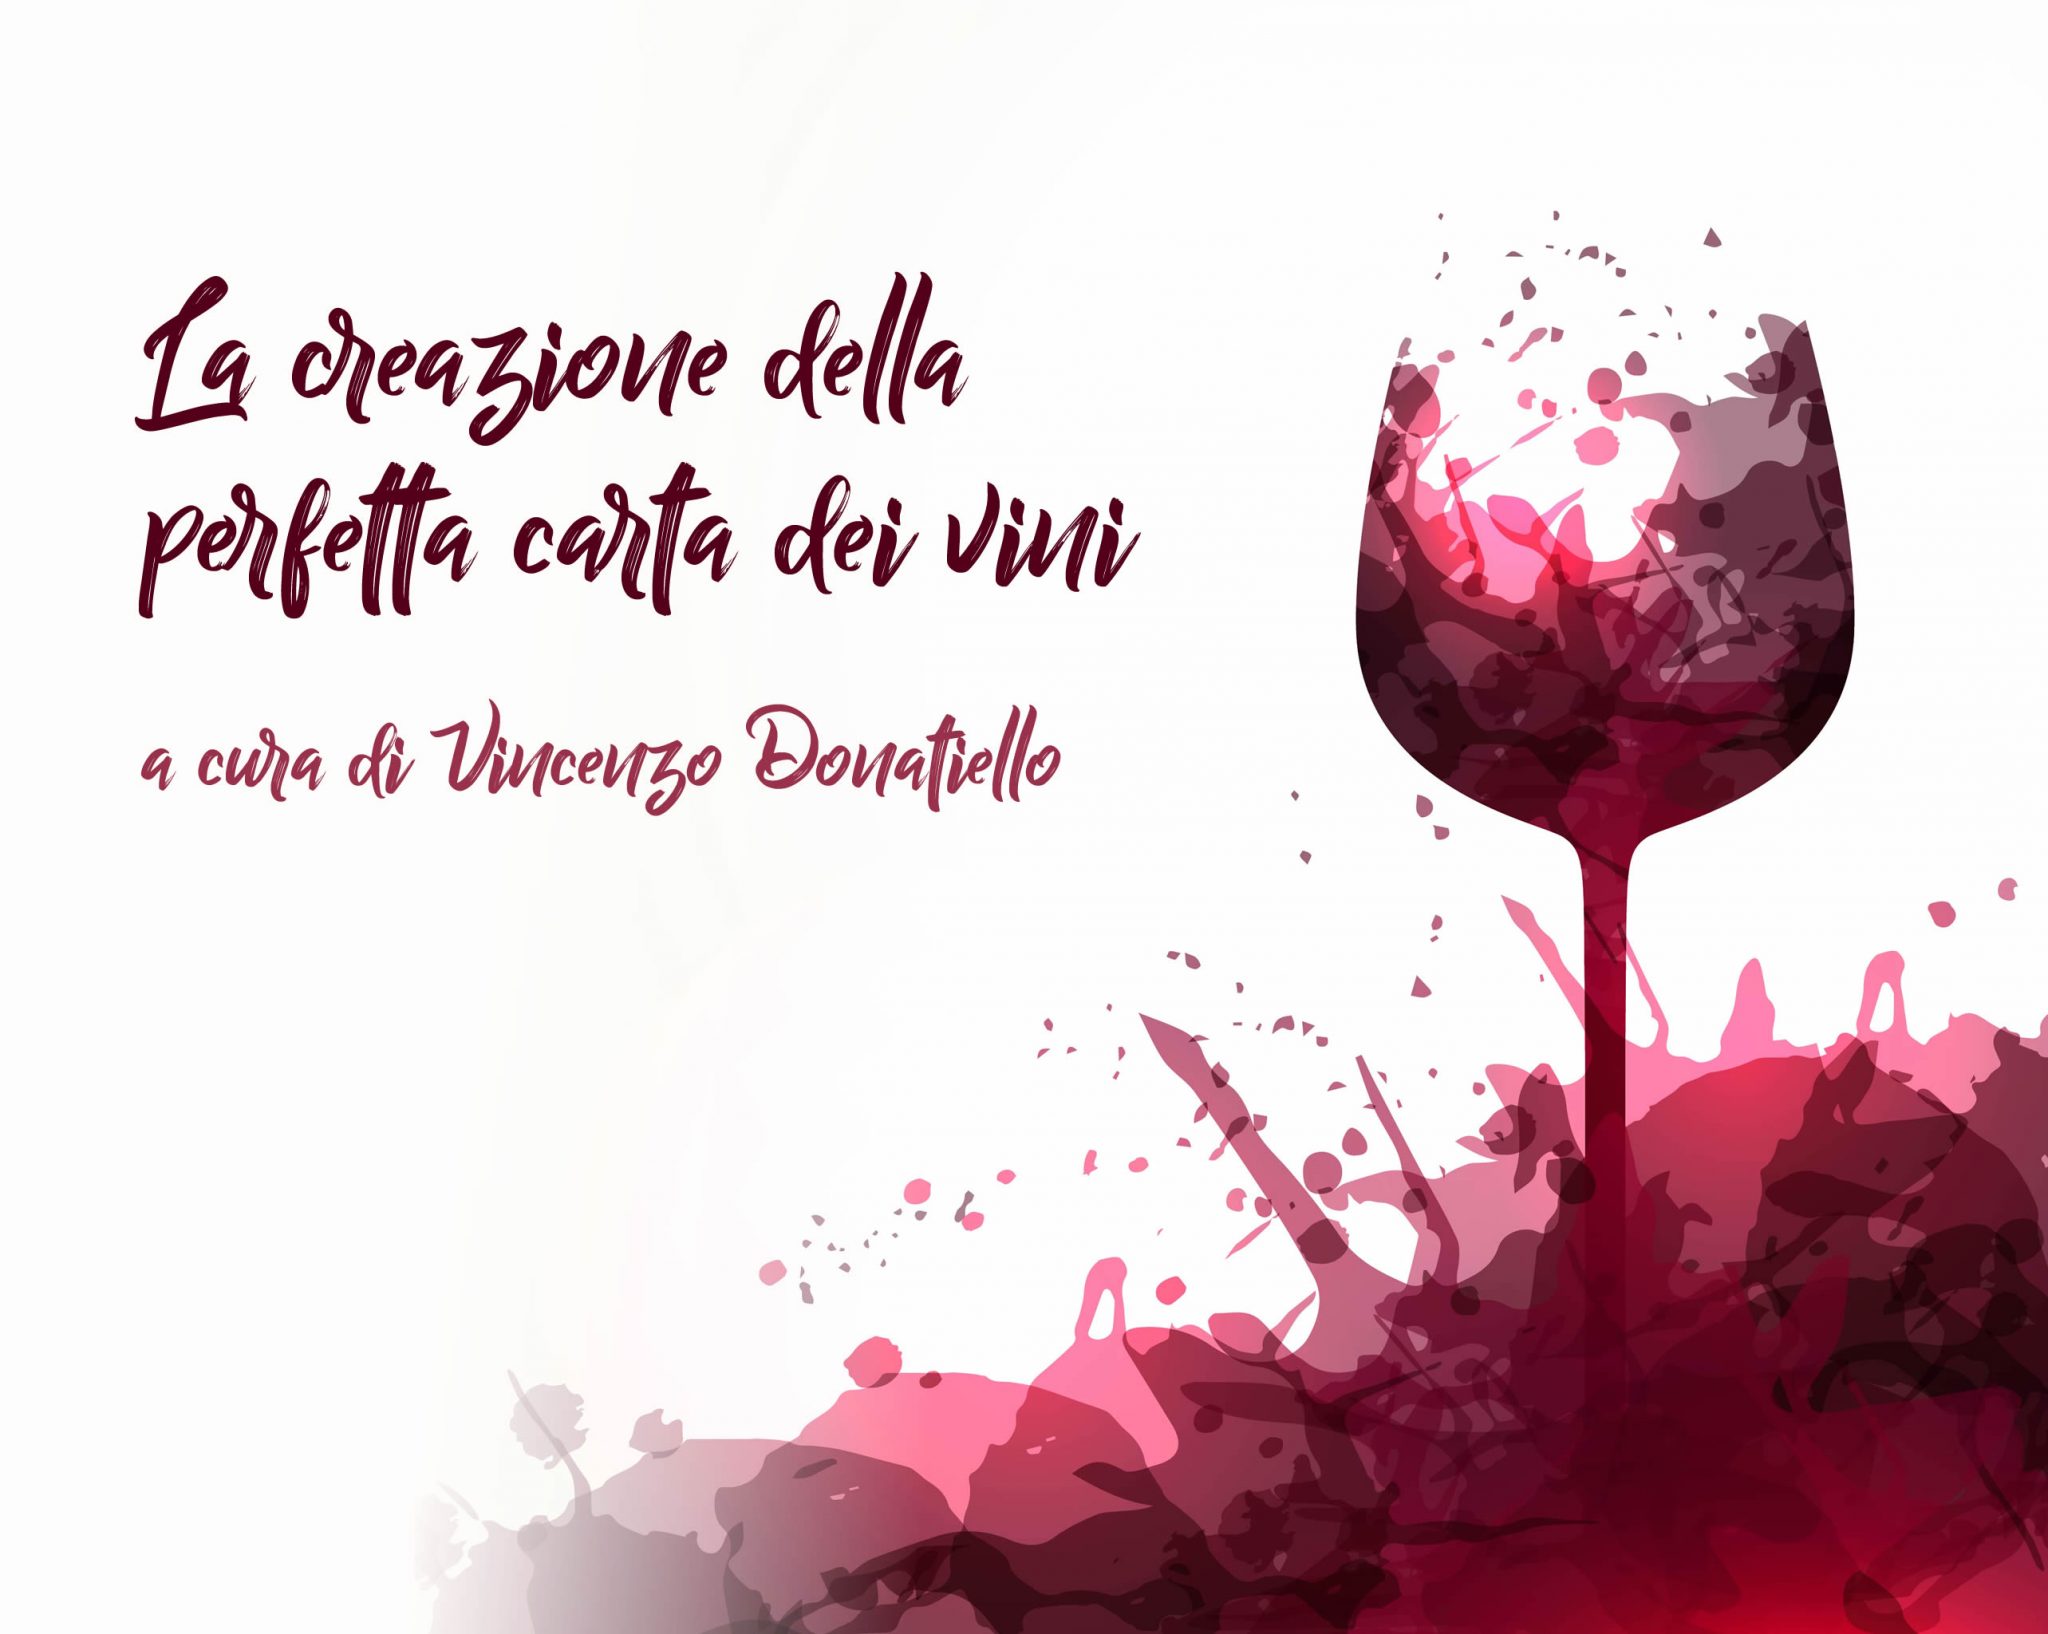 Workshop  “La creazione della perfetta carta dei vini” – I GIGANTI DI LANGA – Terza edizione